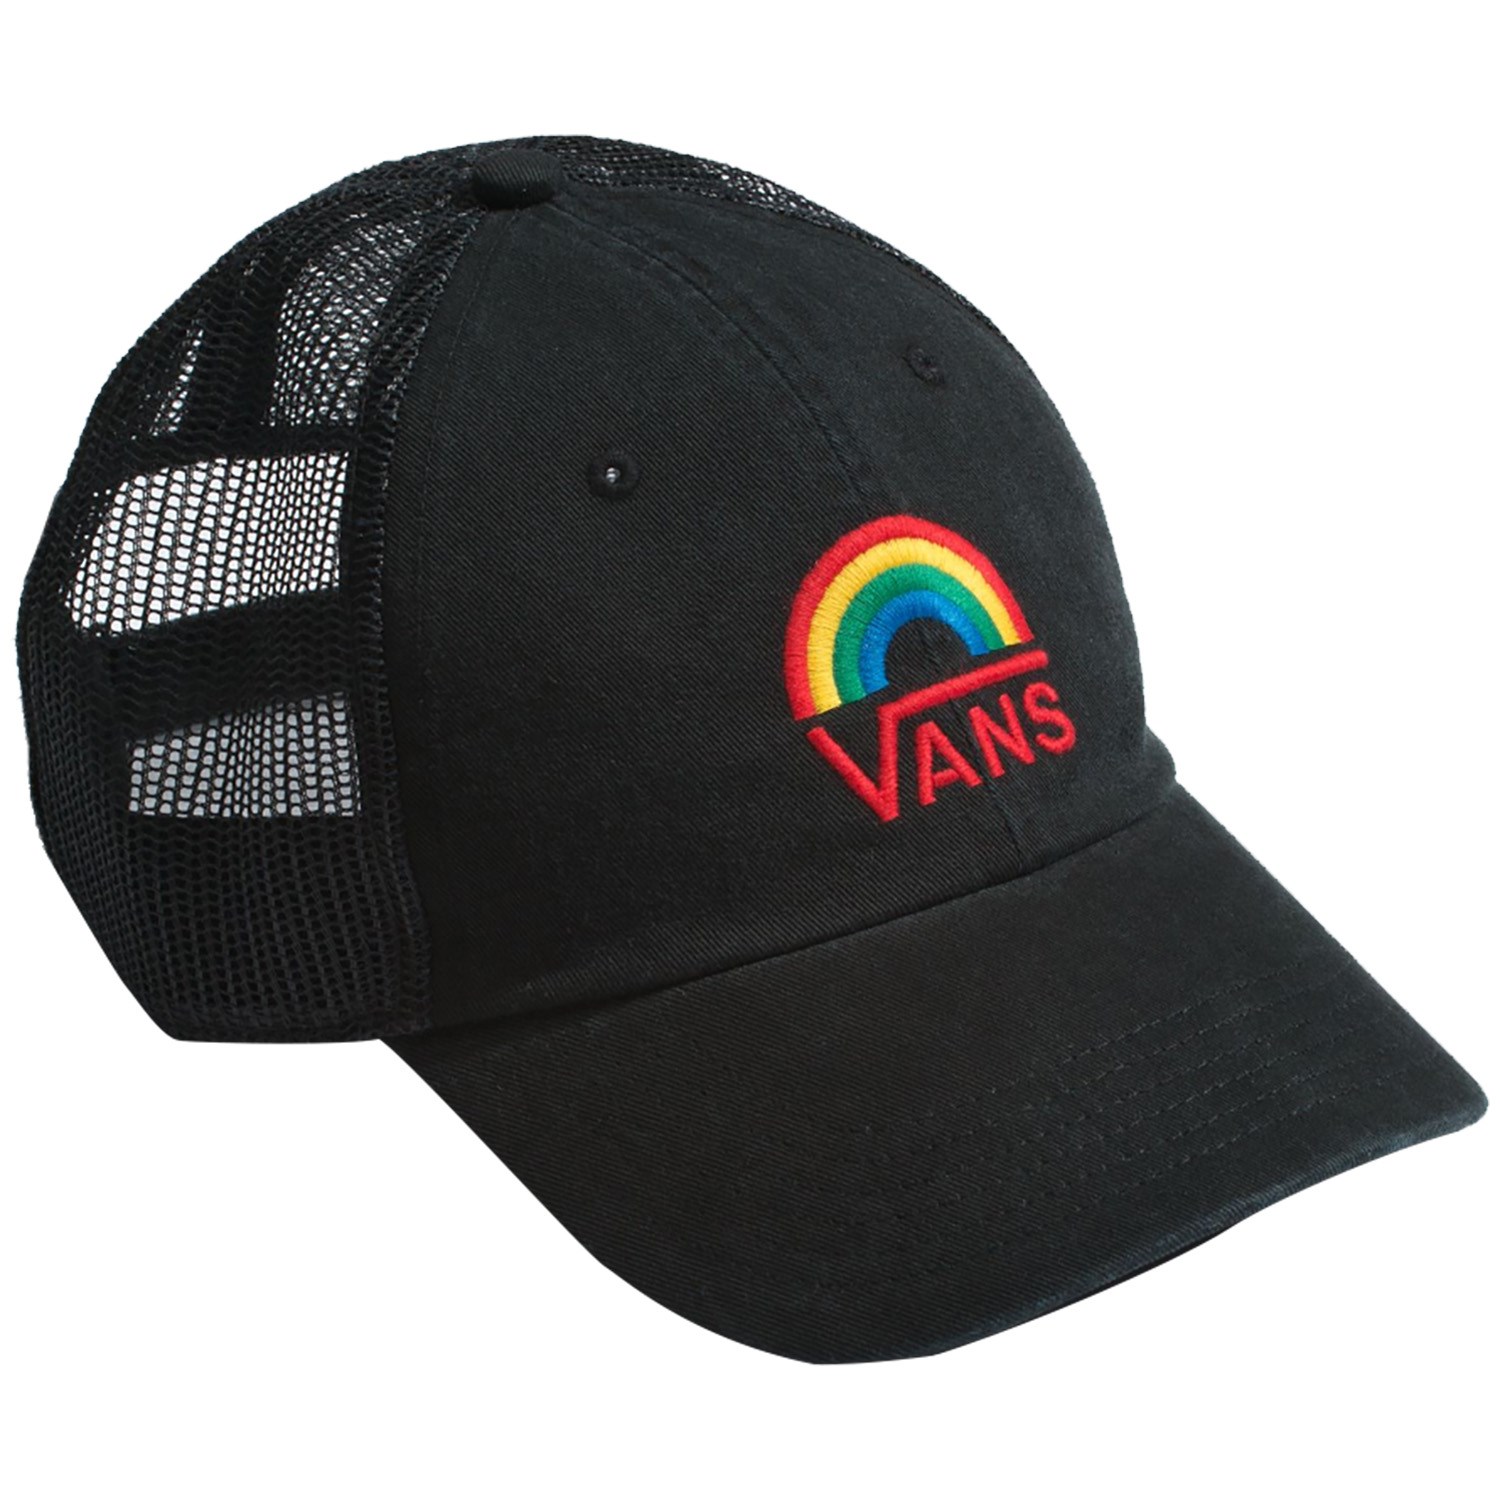 Vans Trucker Hat - Women's evo